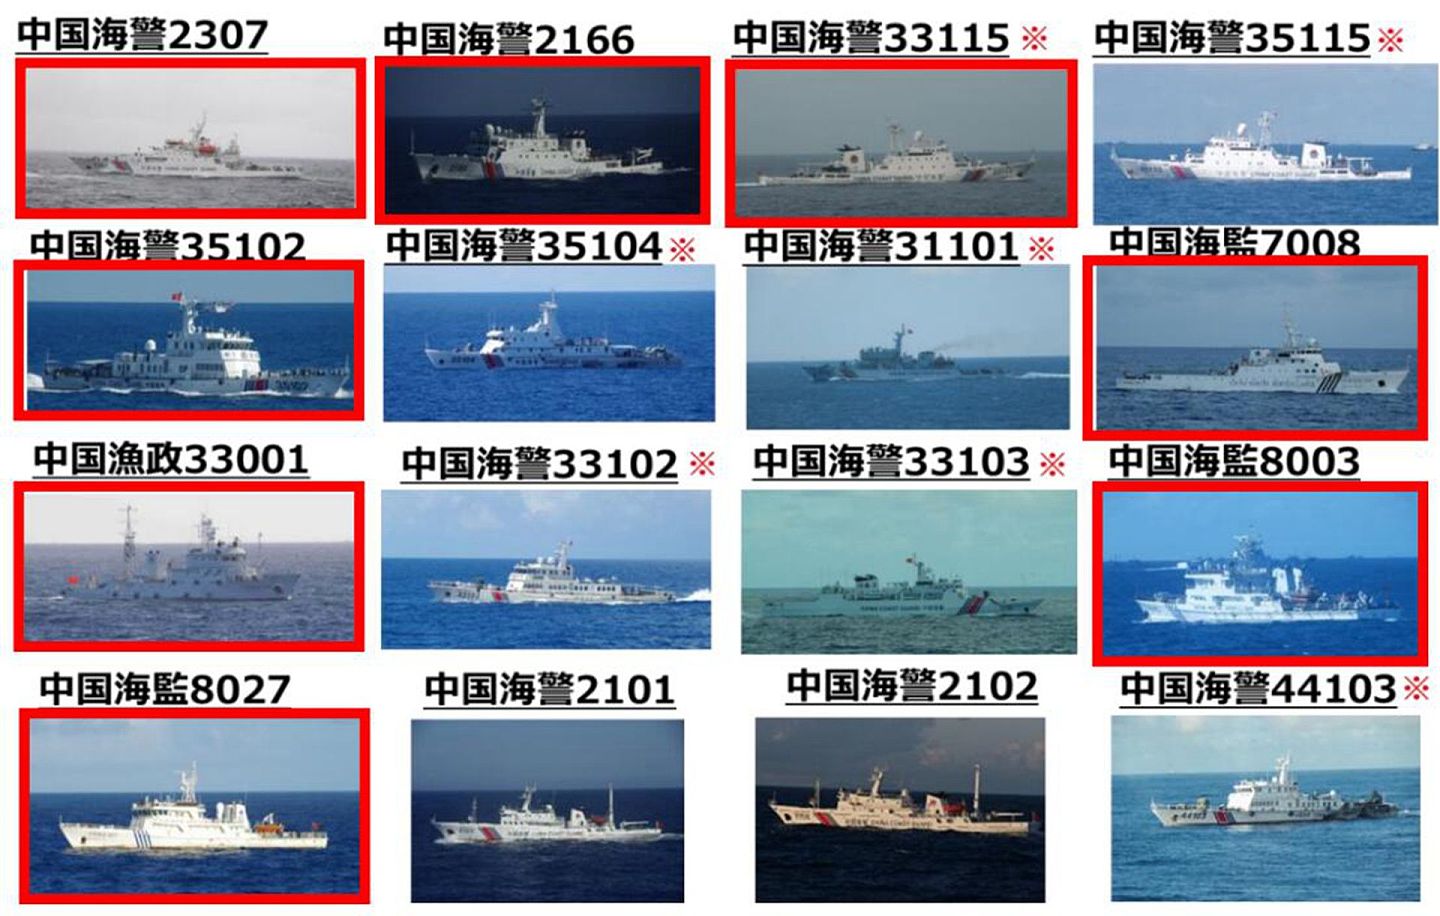 2016年8月初，中国曾派遣数百艘渔船，十多艘公务船前往钓鱼岛外海水域进行作业、维权等活动。但这一大规模行动终究是有所克制的。（日本外务省官网）